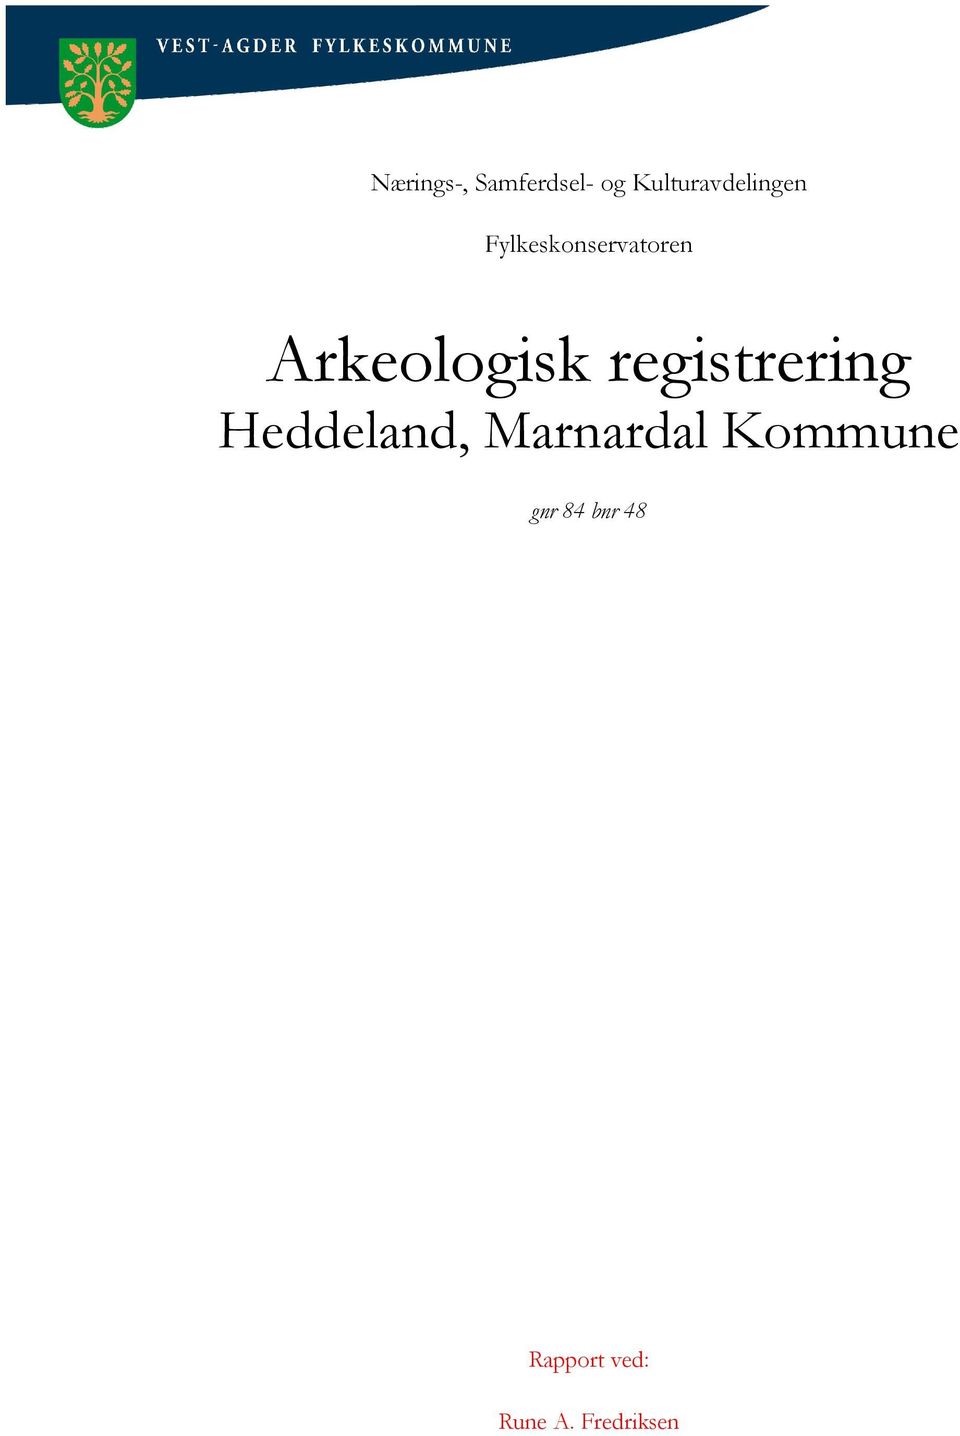 Arkeologisk registrering Heddeland,